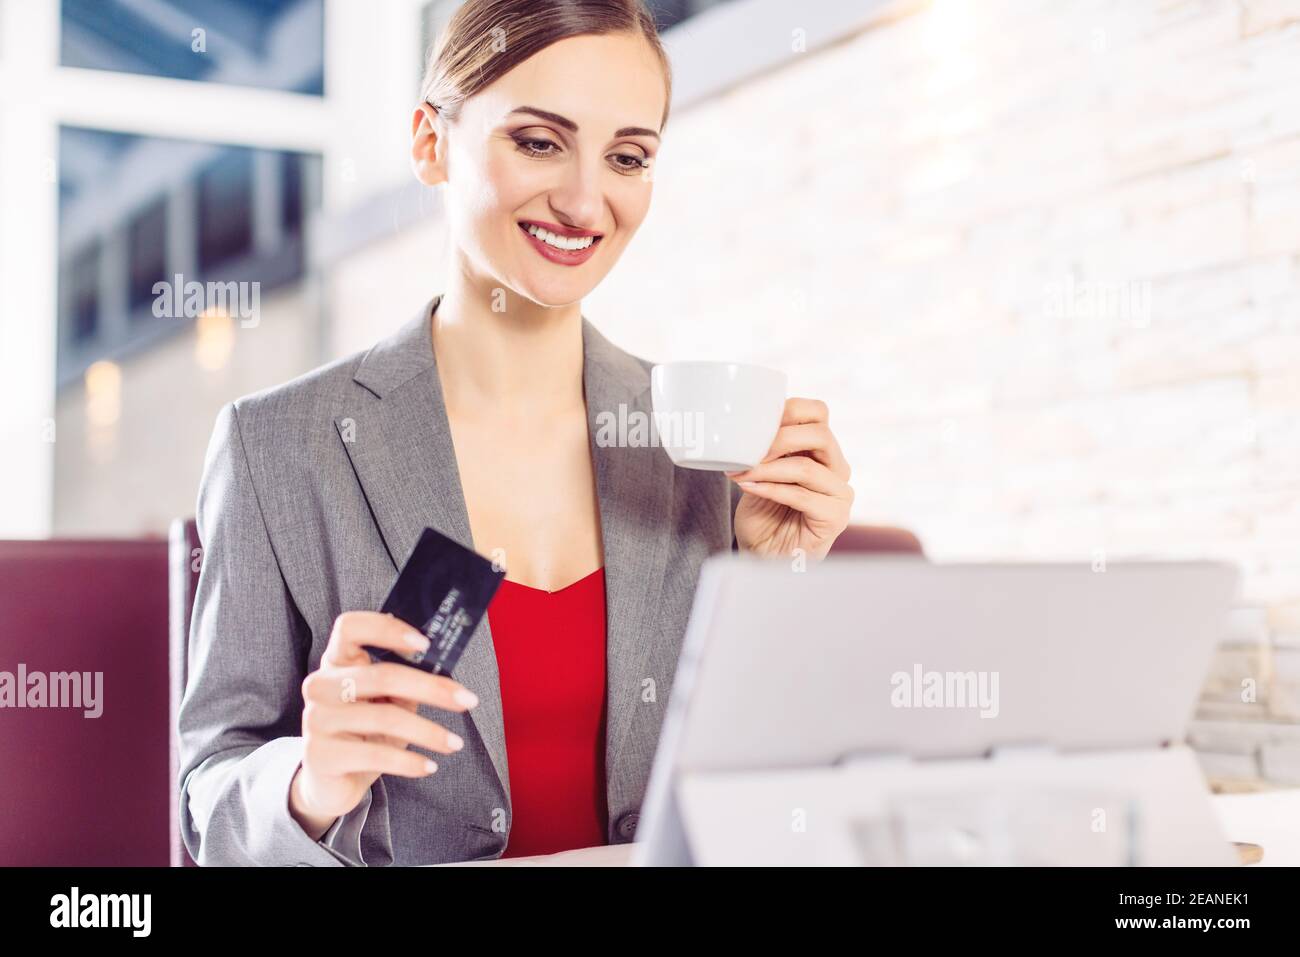 Frau im Café mit Computer, die Sachen von einer Website bestellt Stockfoto